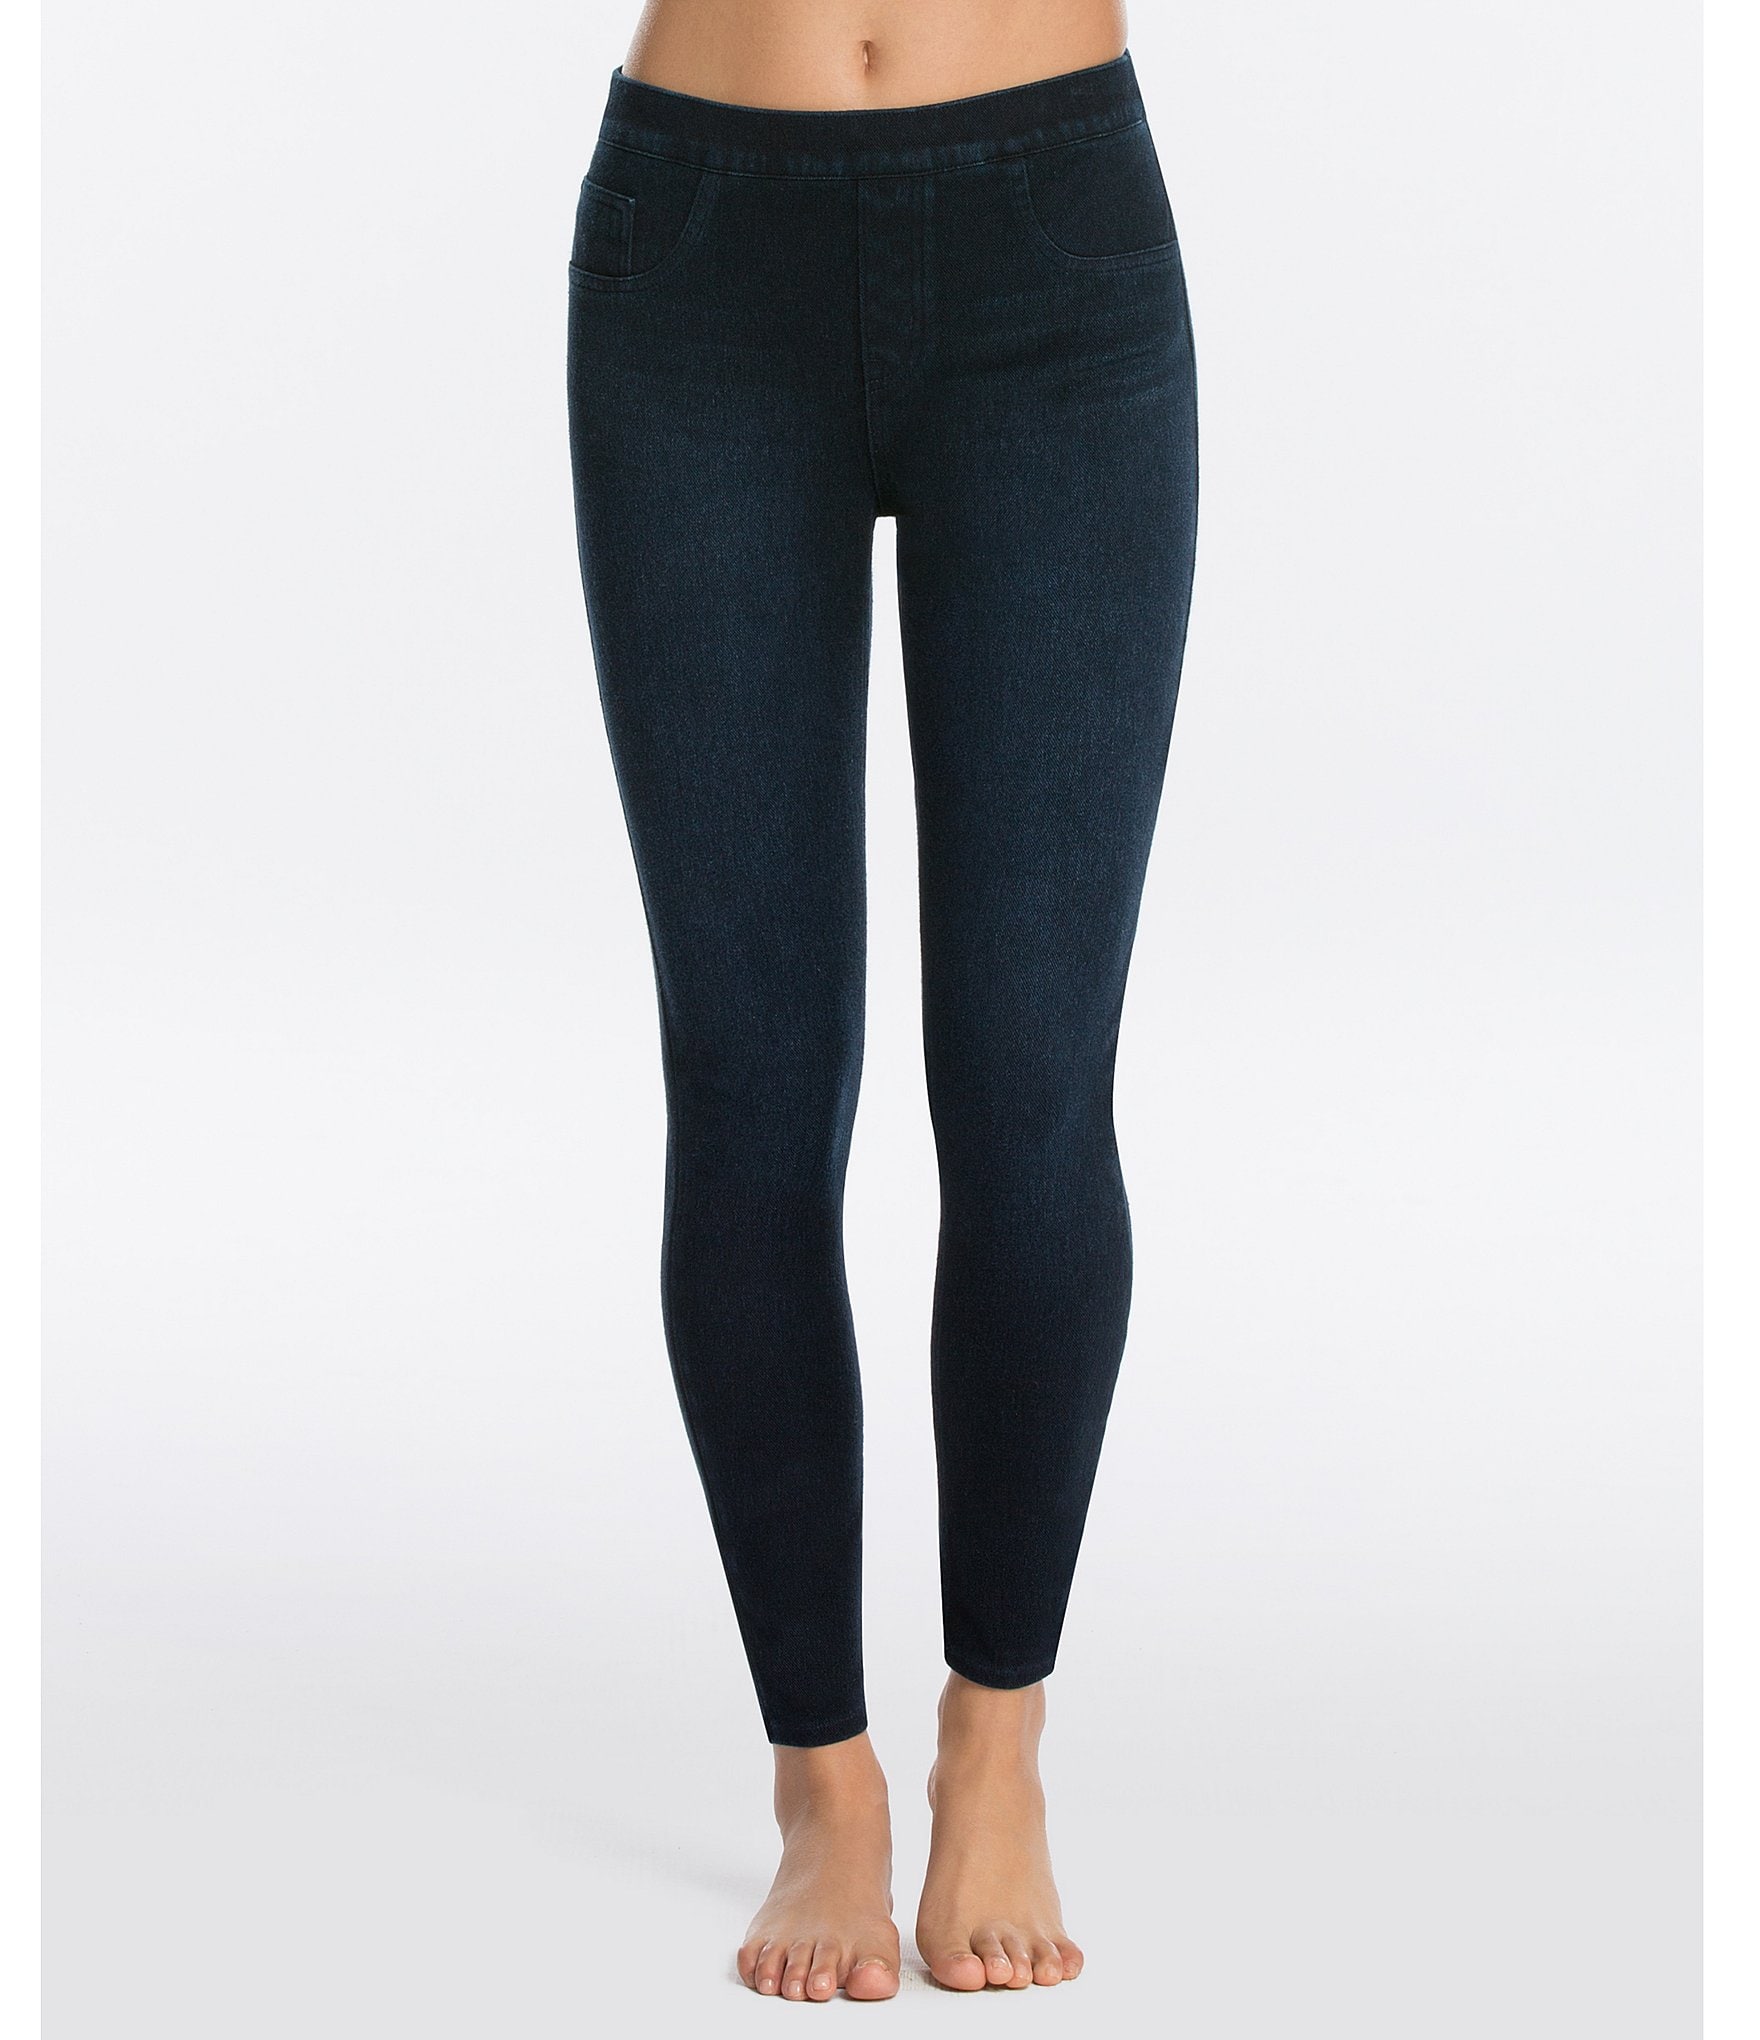  Jean Yoga Pants